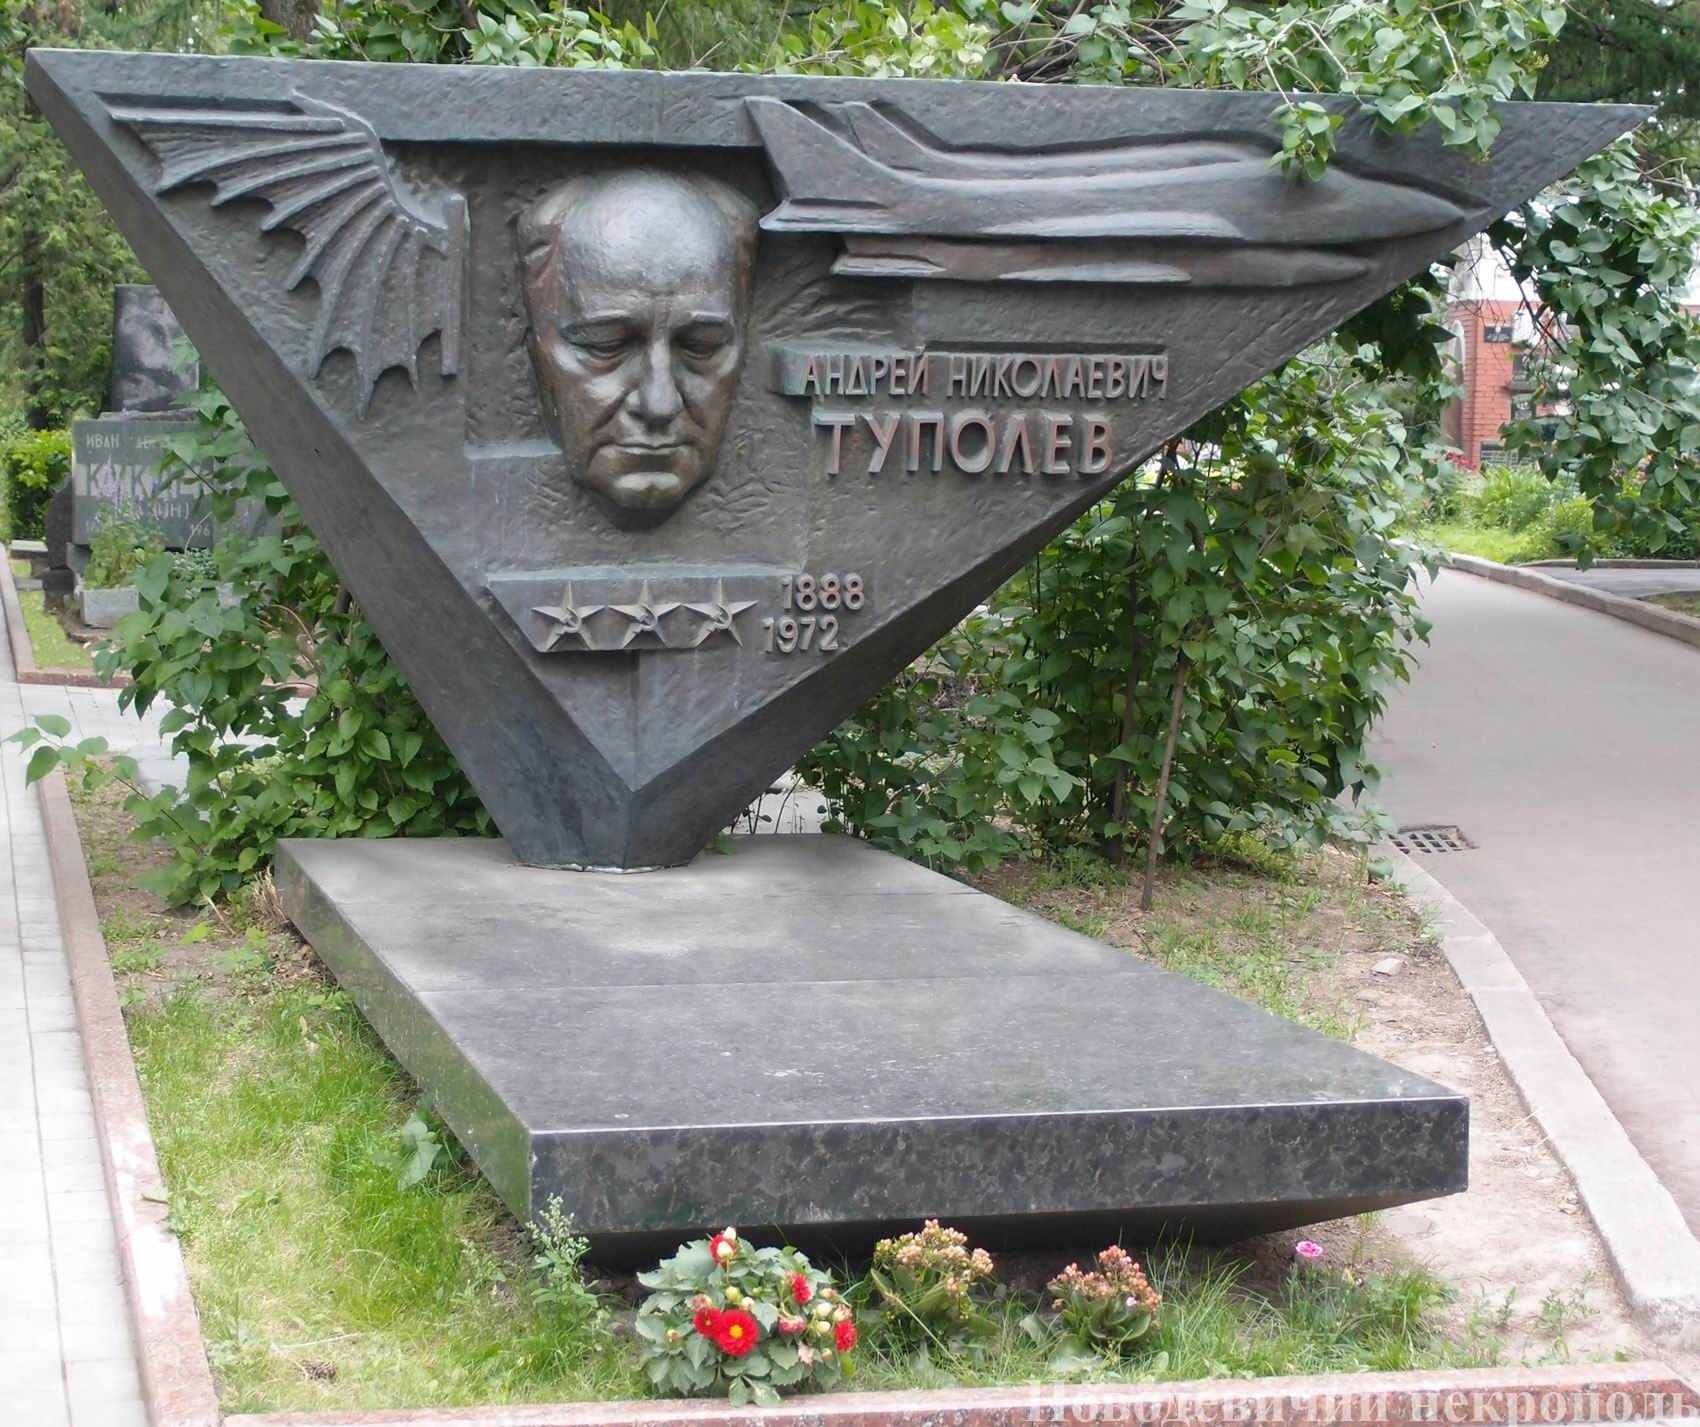 Памятник на могиле Туполева А.Н. (1888-1972), ск. Г.Таидзе, арх. Я.Белопольский, на Новодевичьем кладбище (8-46-1). Нажмите левую кнопку мыши, чтобы увидеть фрагмент памятника.